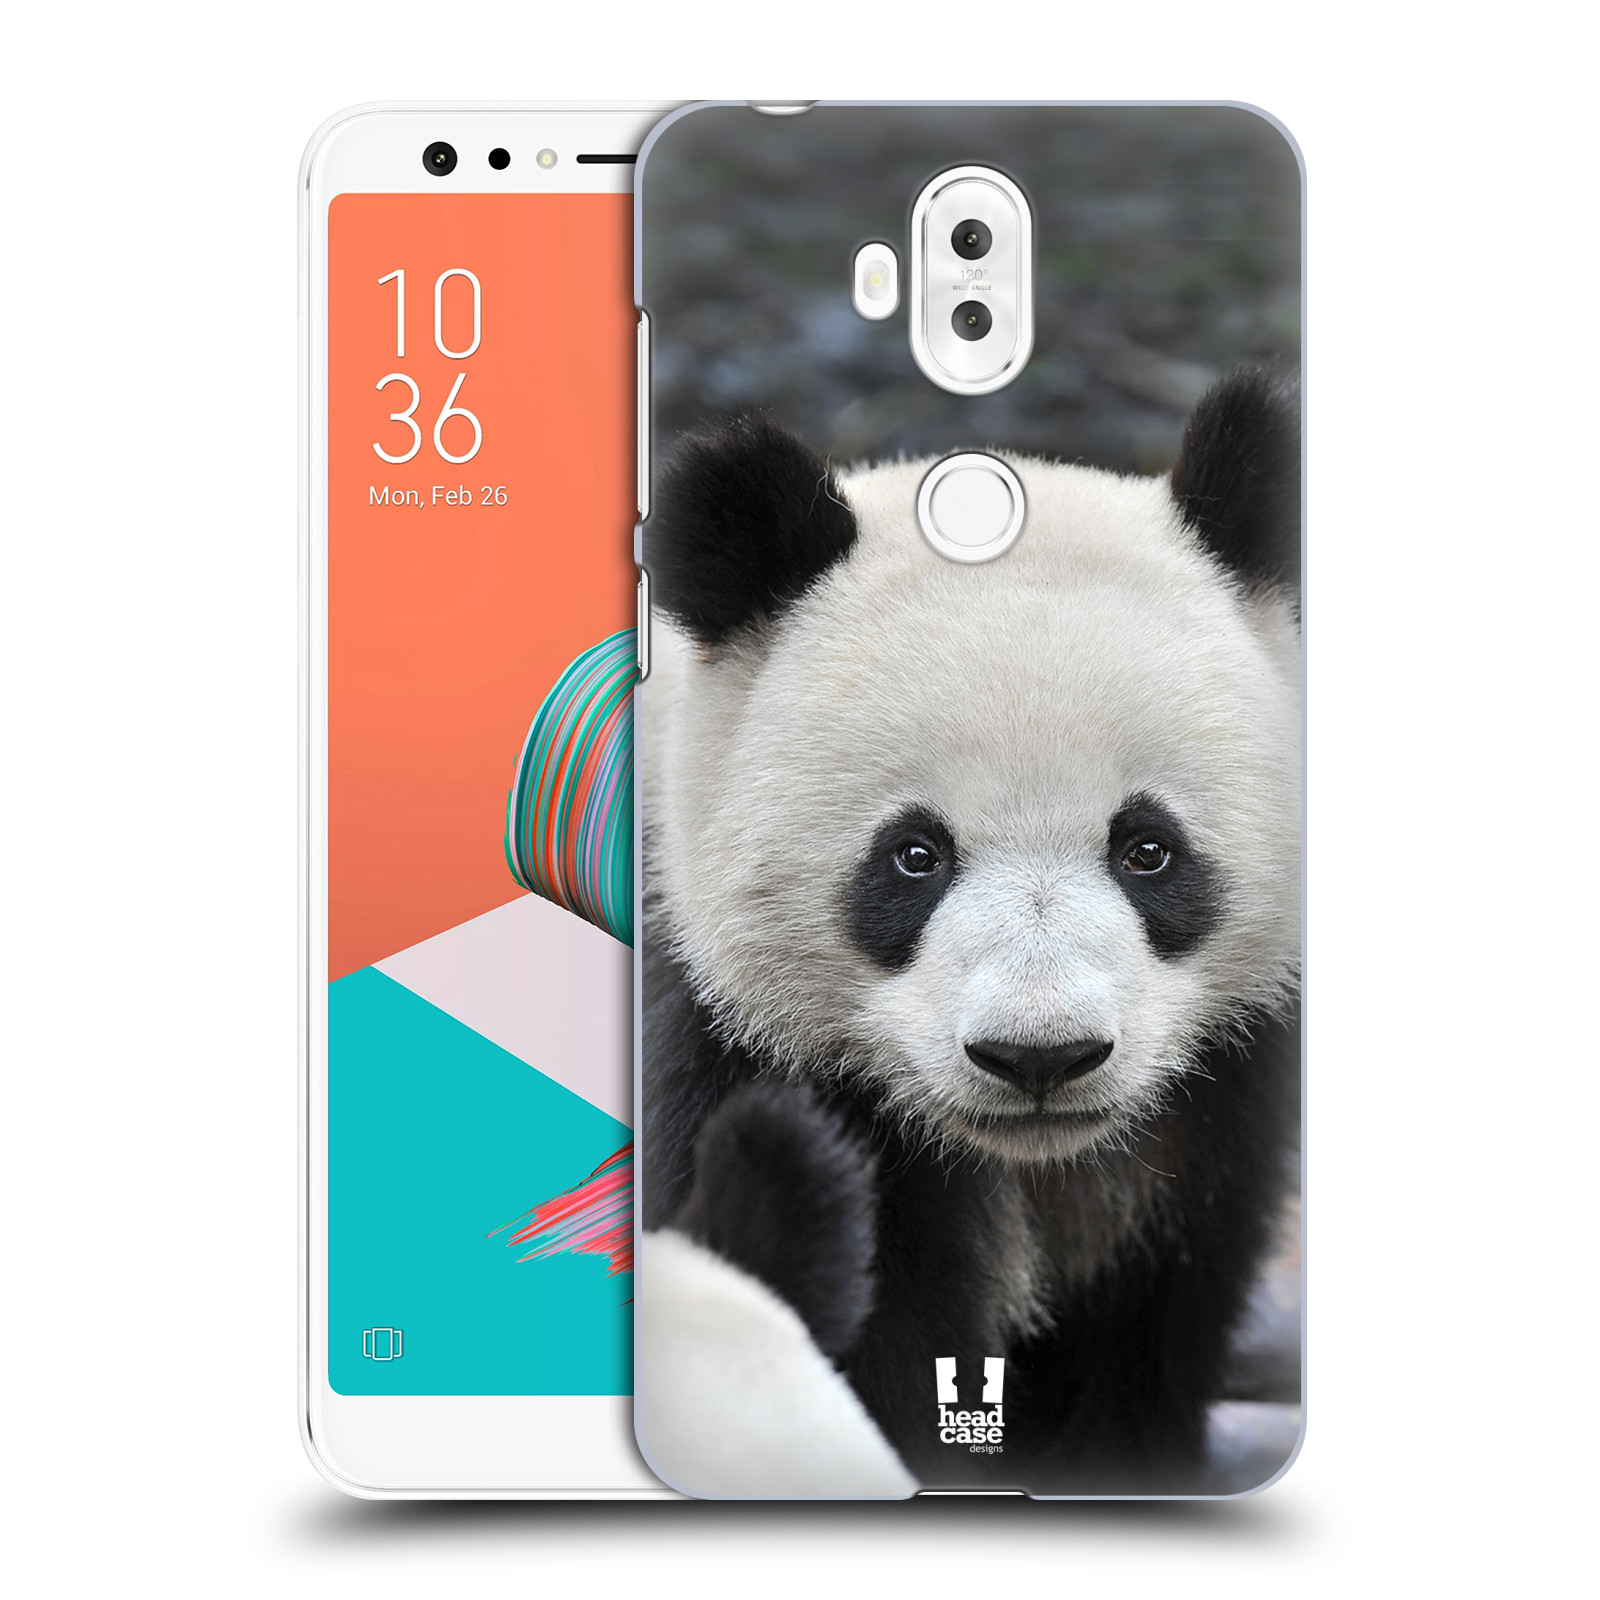 Zadní obal pro mobil Asus Zenfone 5 Lite ZC600KL - HEAD CASE - Svět zvířat medvěd panda